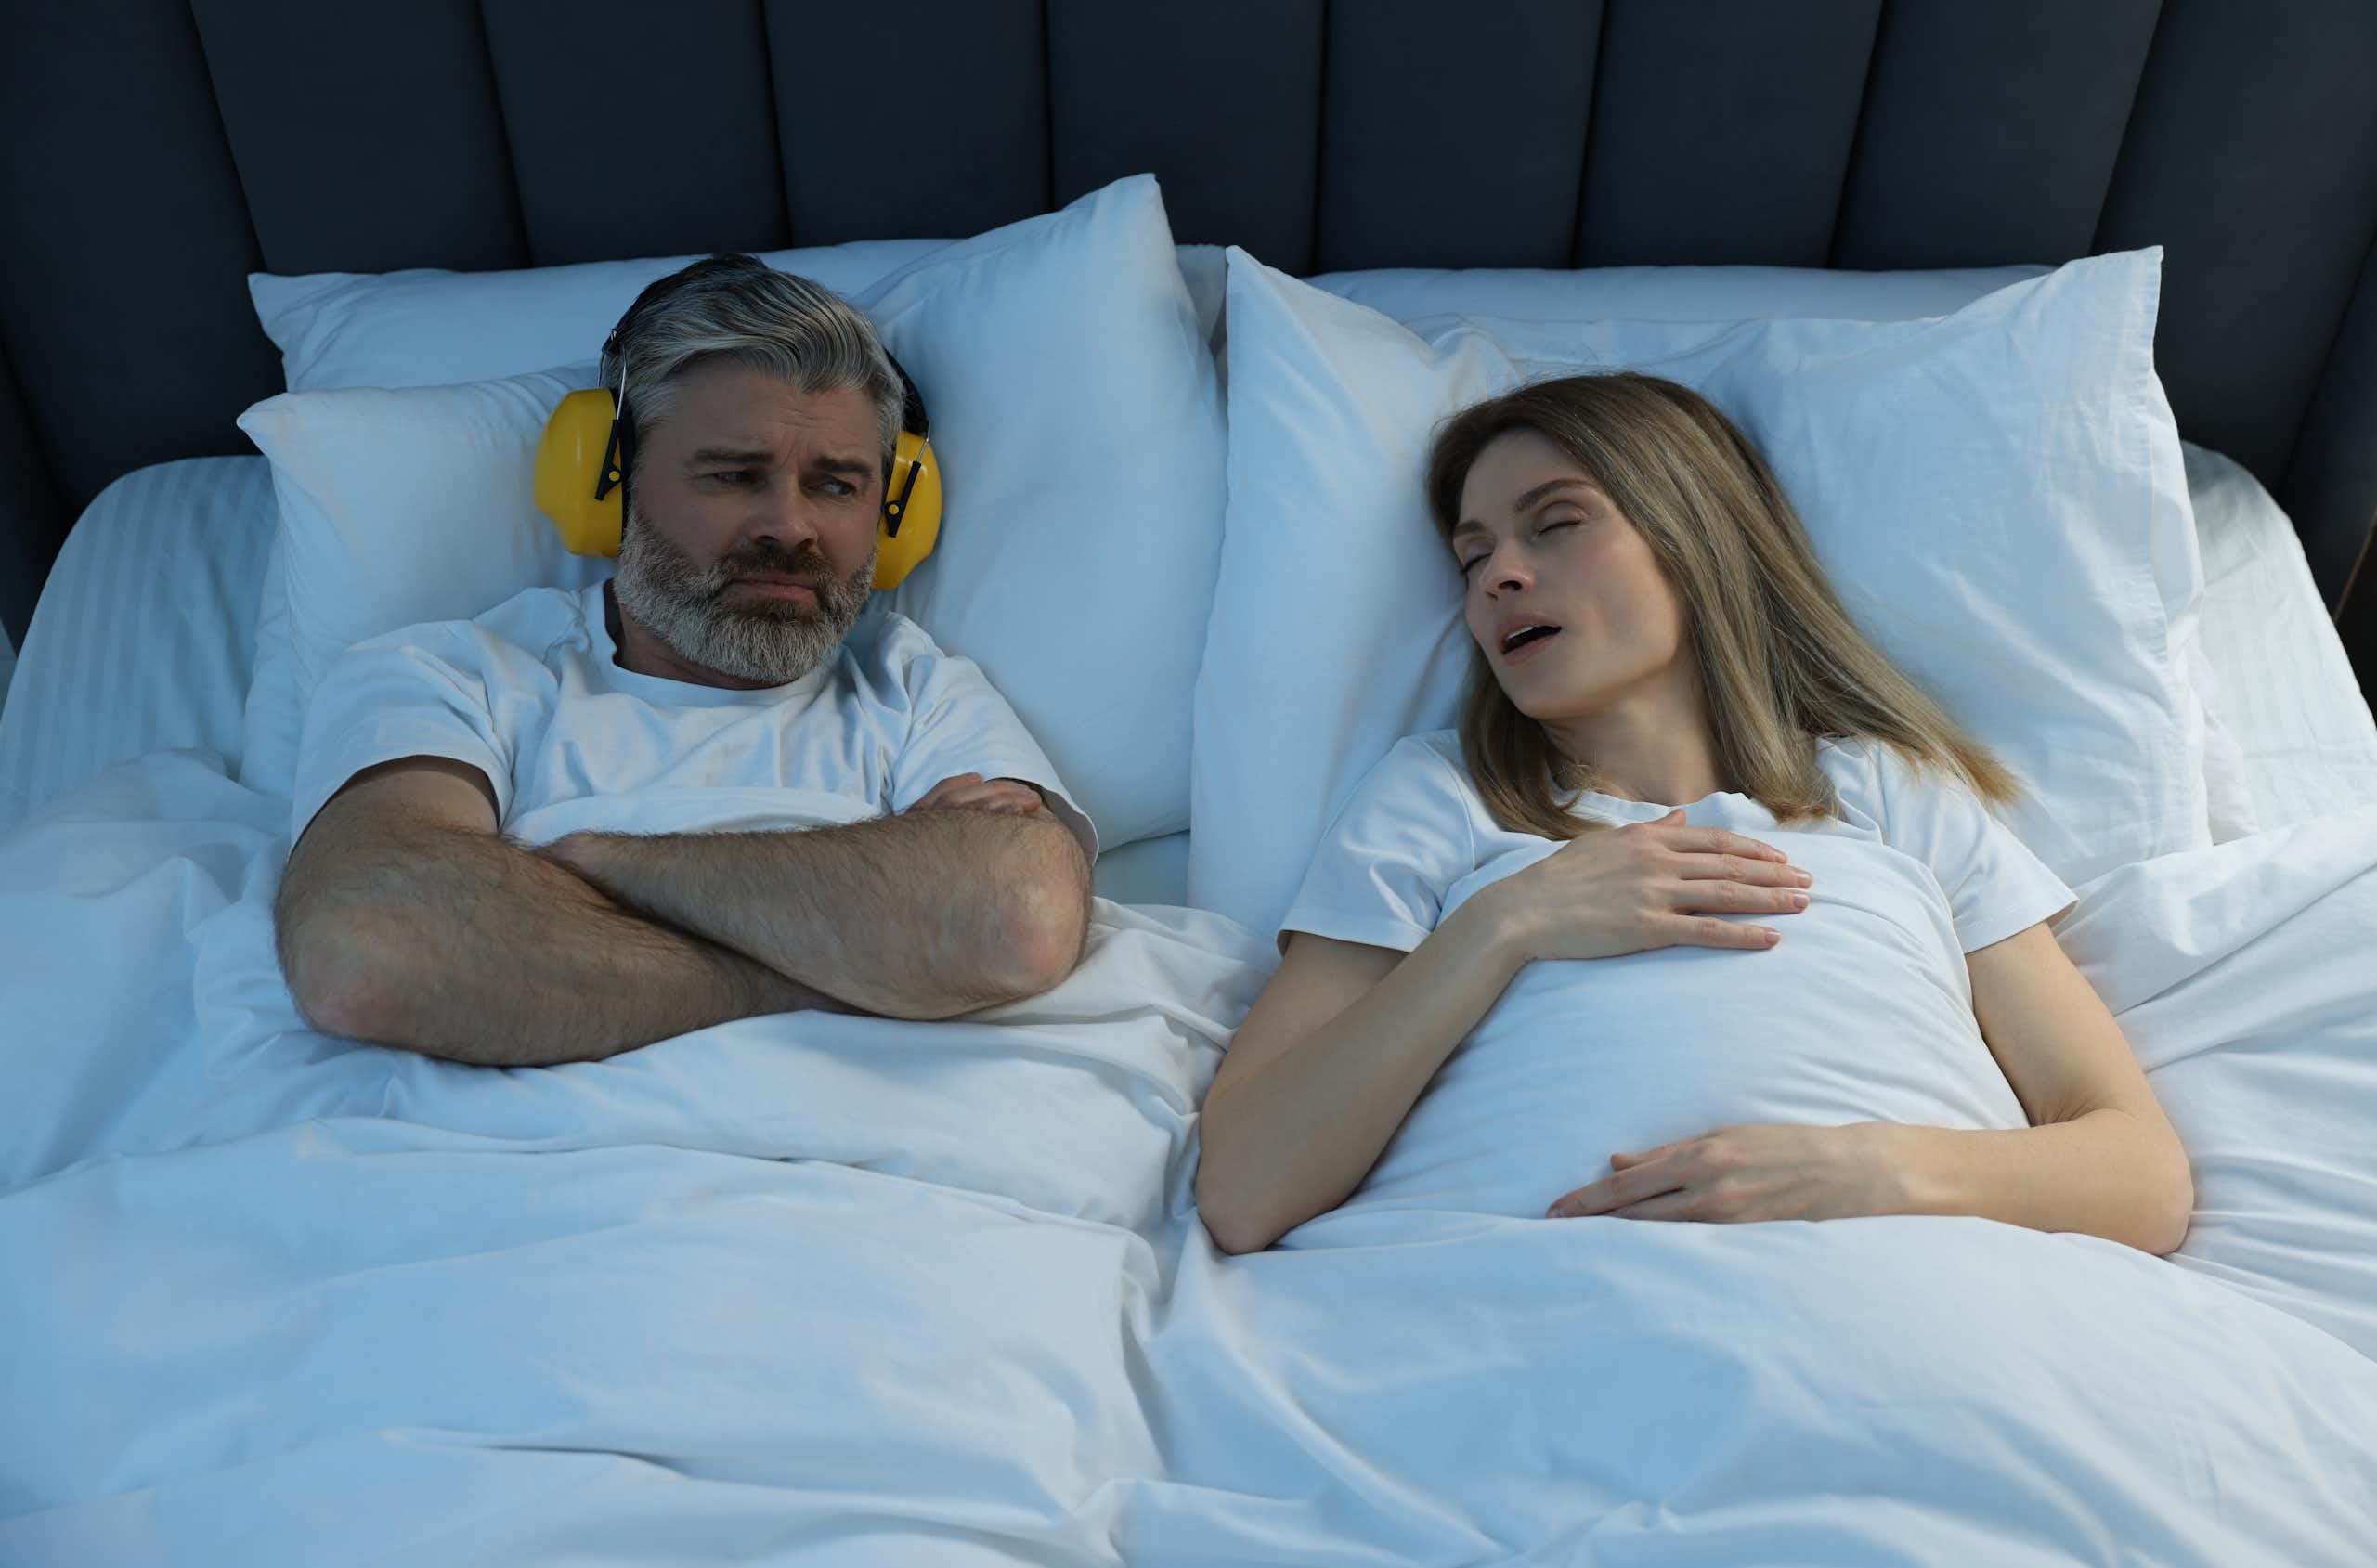 Roncar no es sinónimo de dormir bien (y puede perjudicar la salud del compañero de cama)